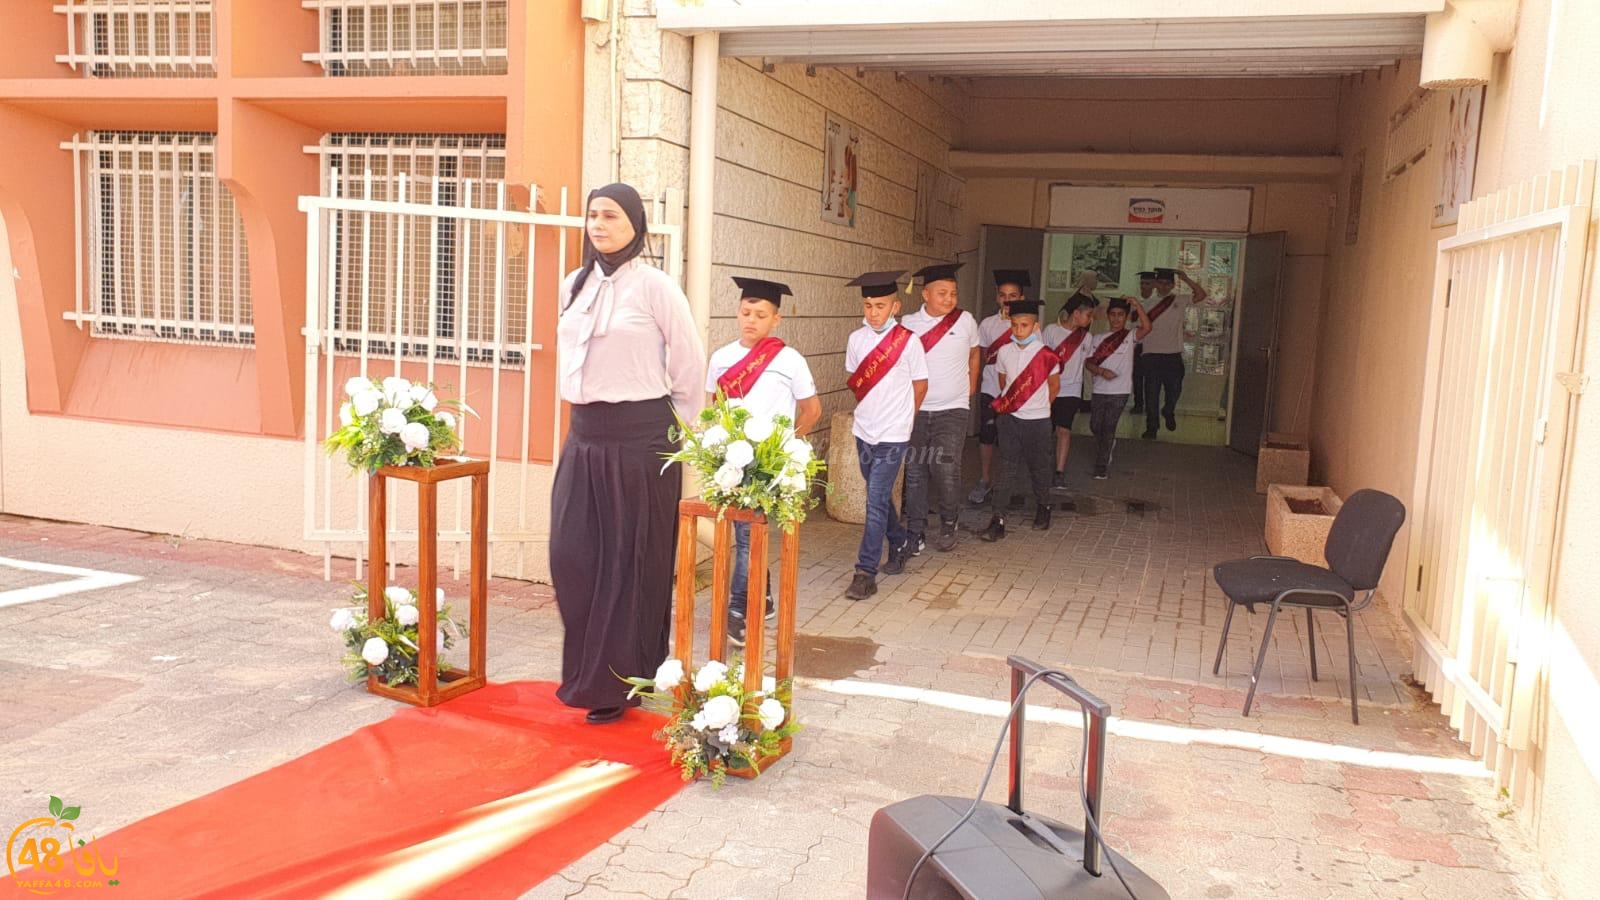 مدرسة الرازي الابتدائيّة في اللّد تحتفل بتخريج فوج من طلّابها